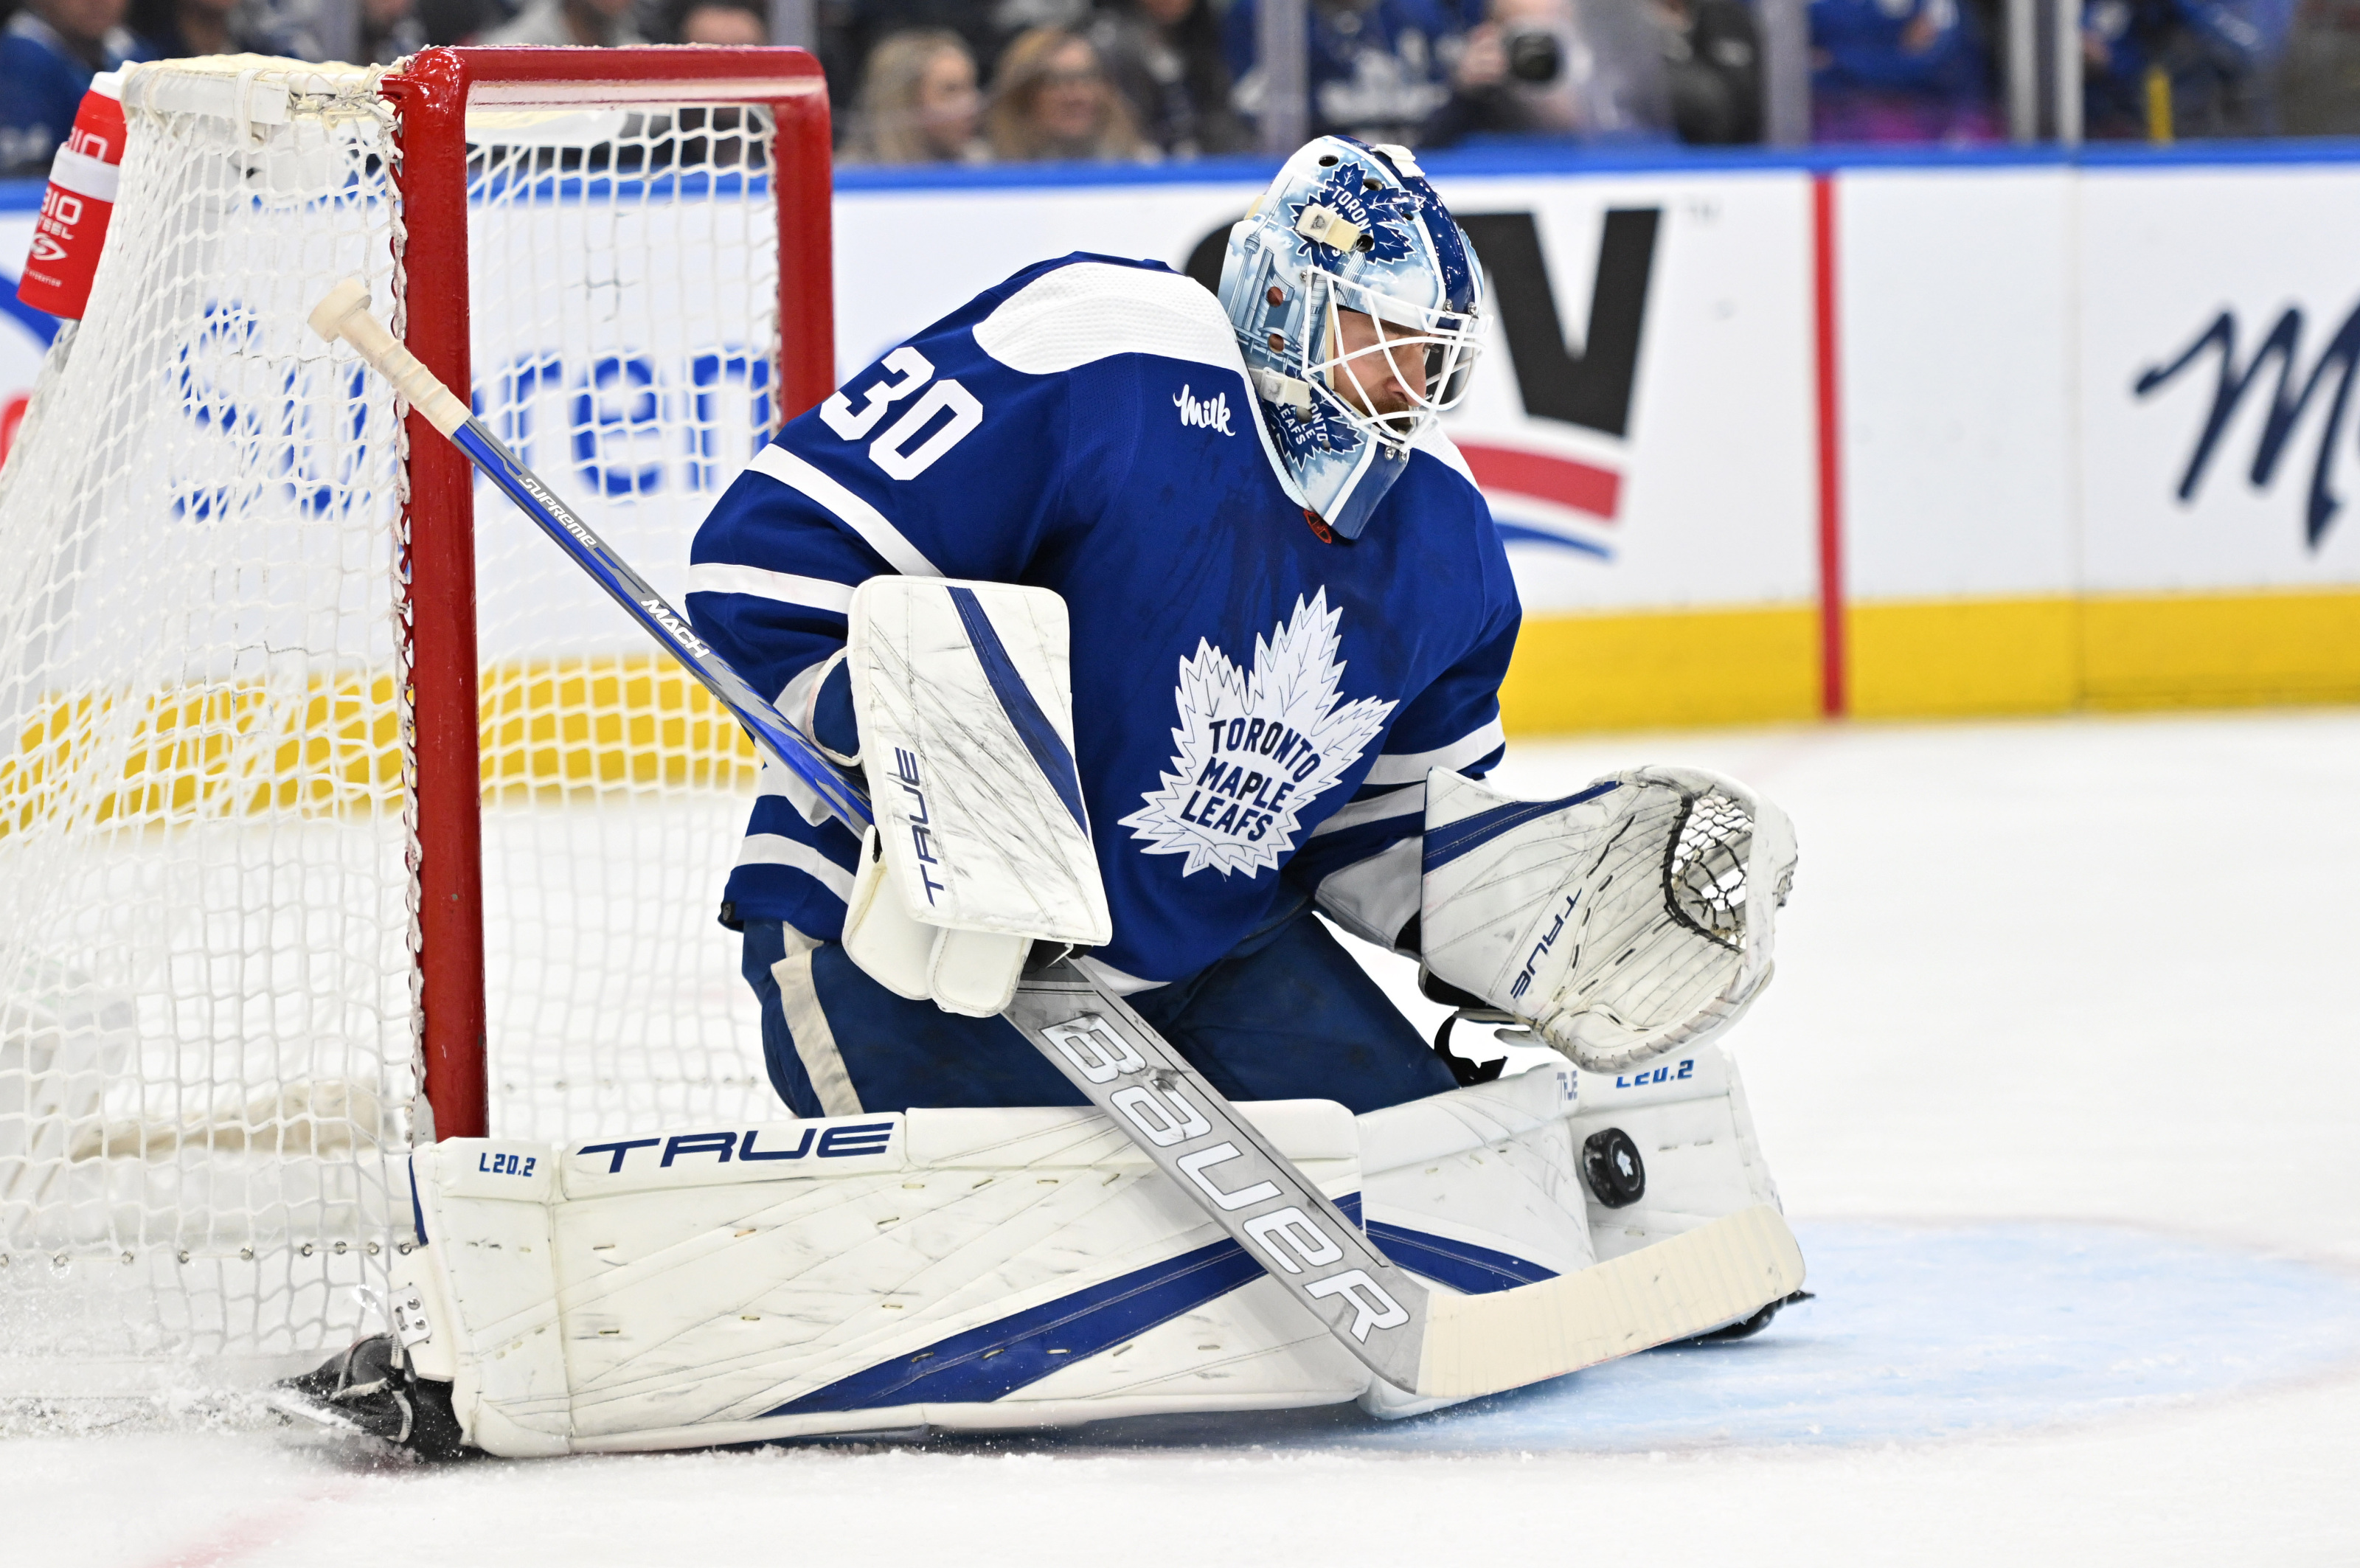 Goalie Ilya Samsonov expected to start for Maple Leafs against Bruins